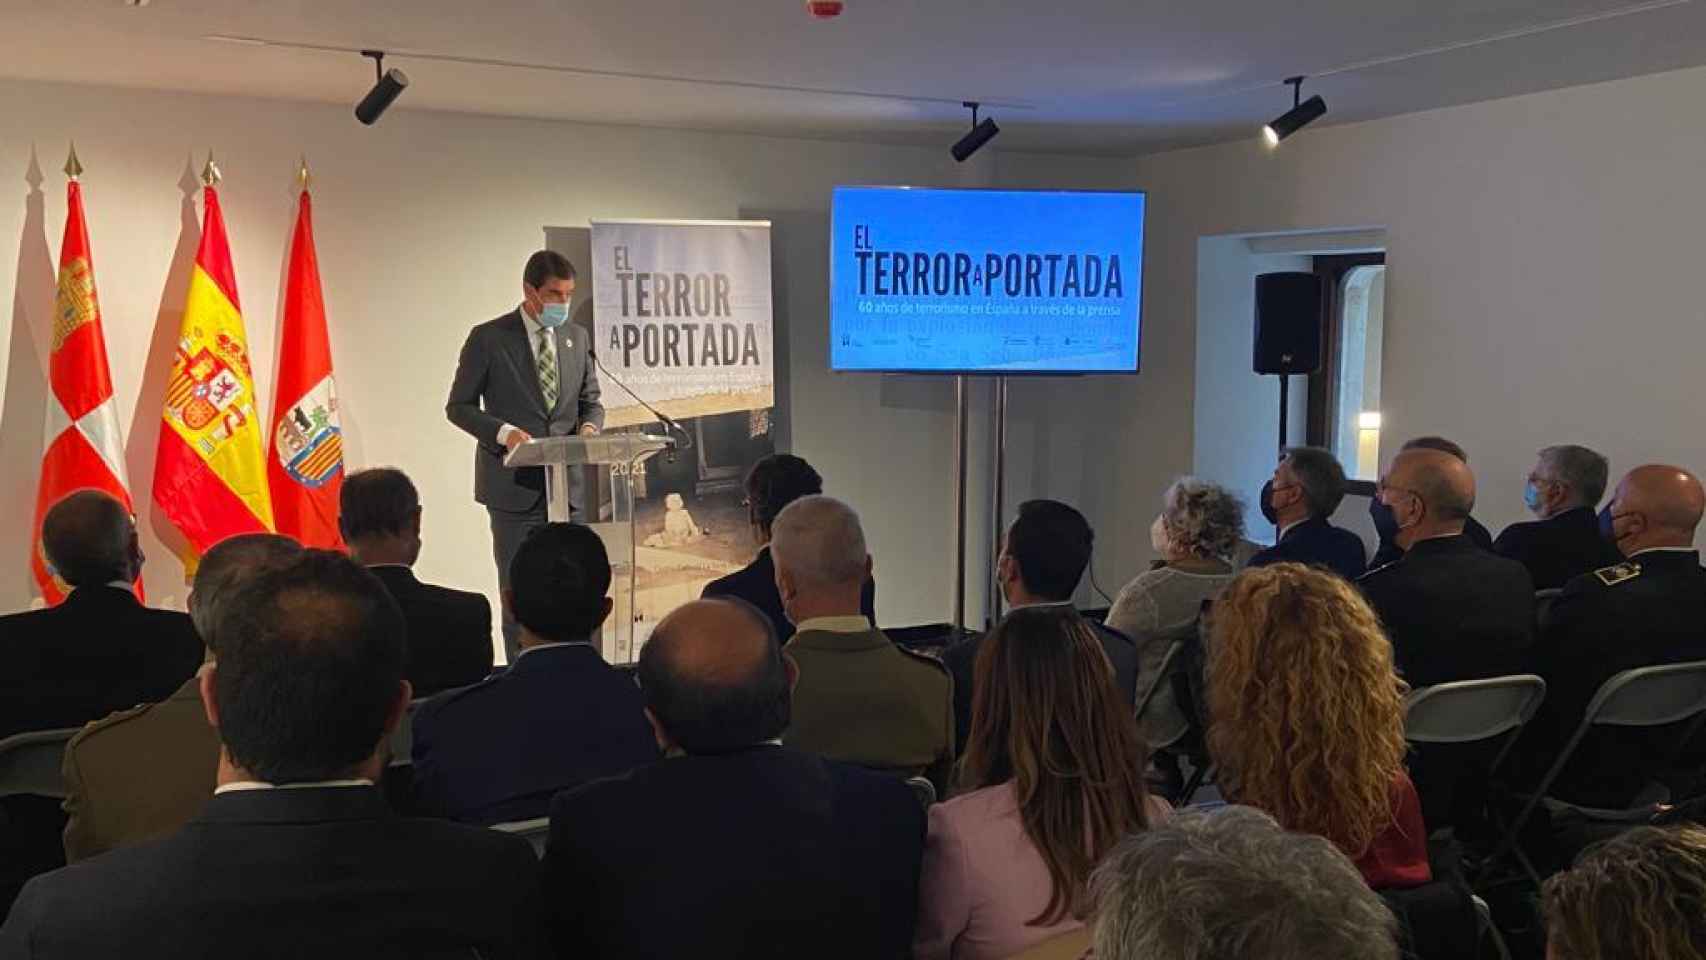 Inauguración de la exposición “El terror a portada. 60 años del terrorismo en España a través de la prensa”